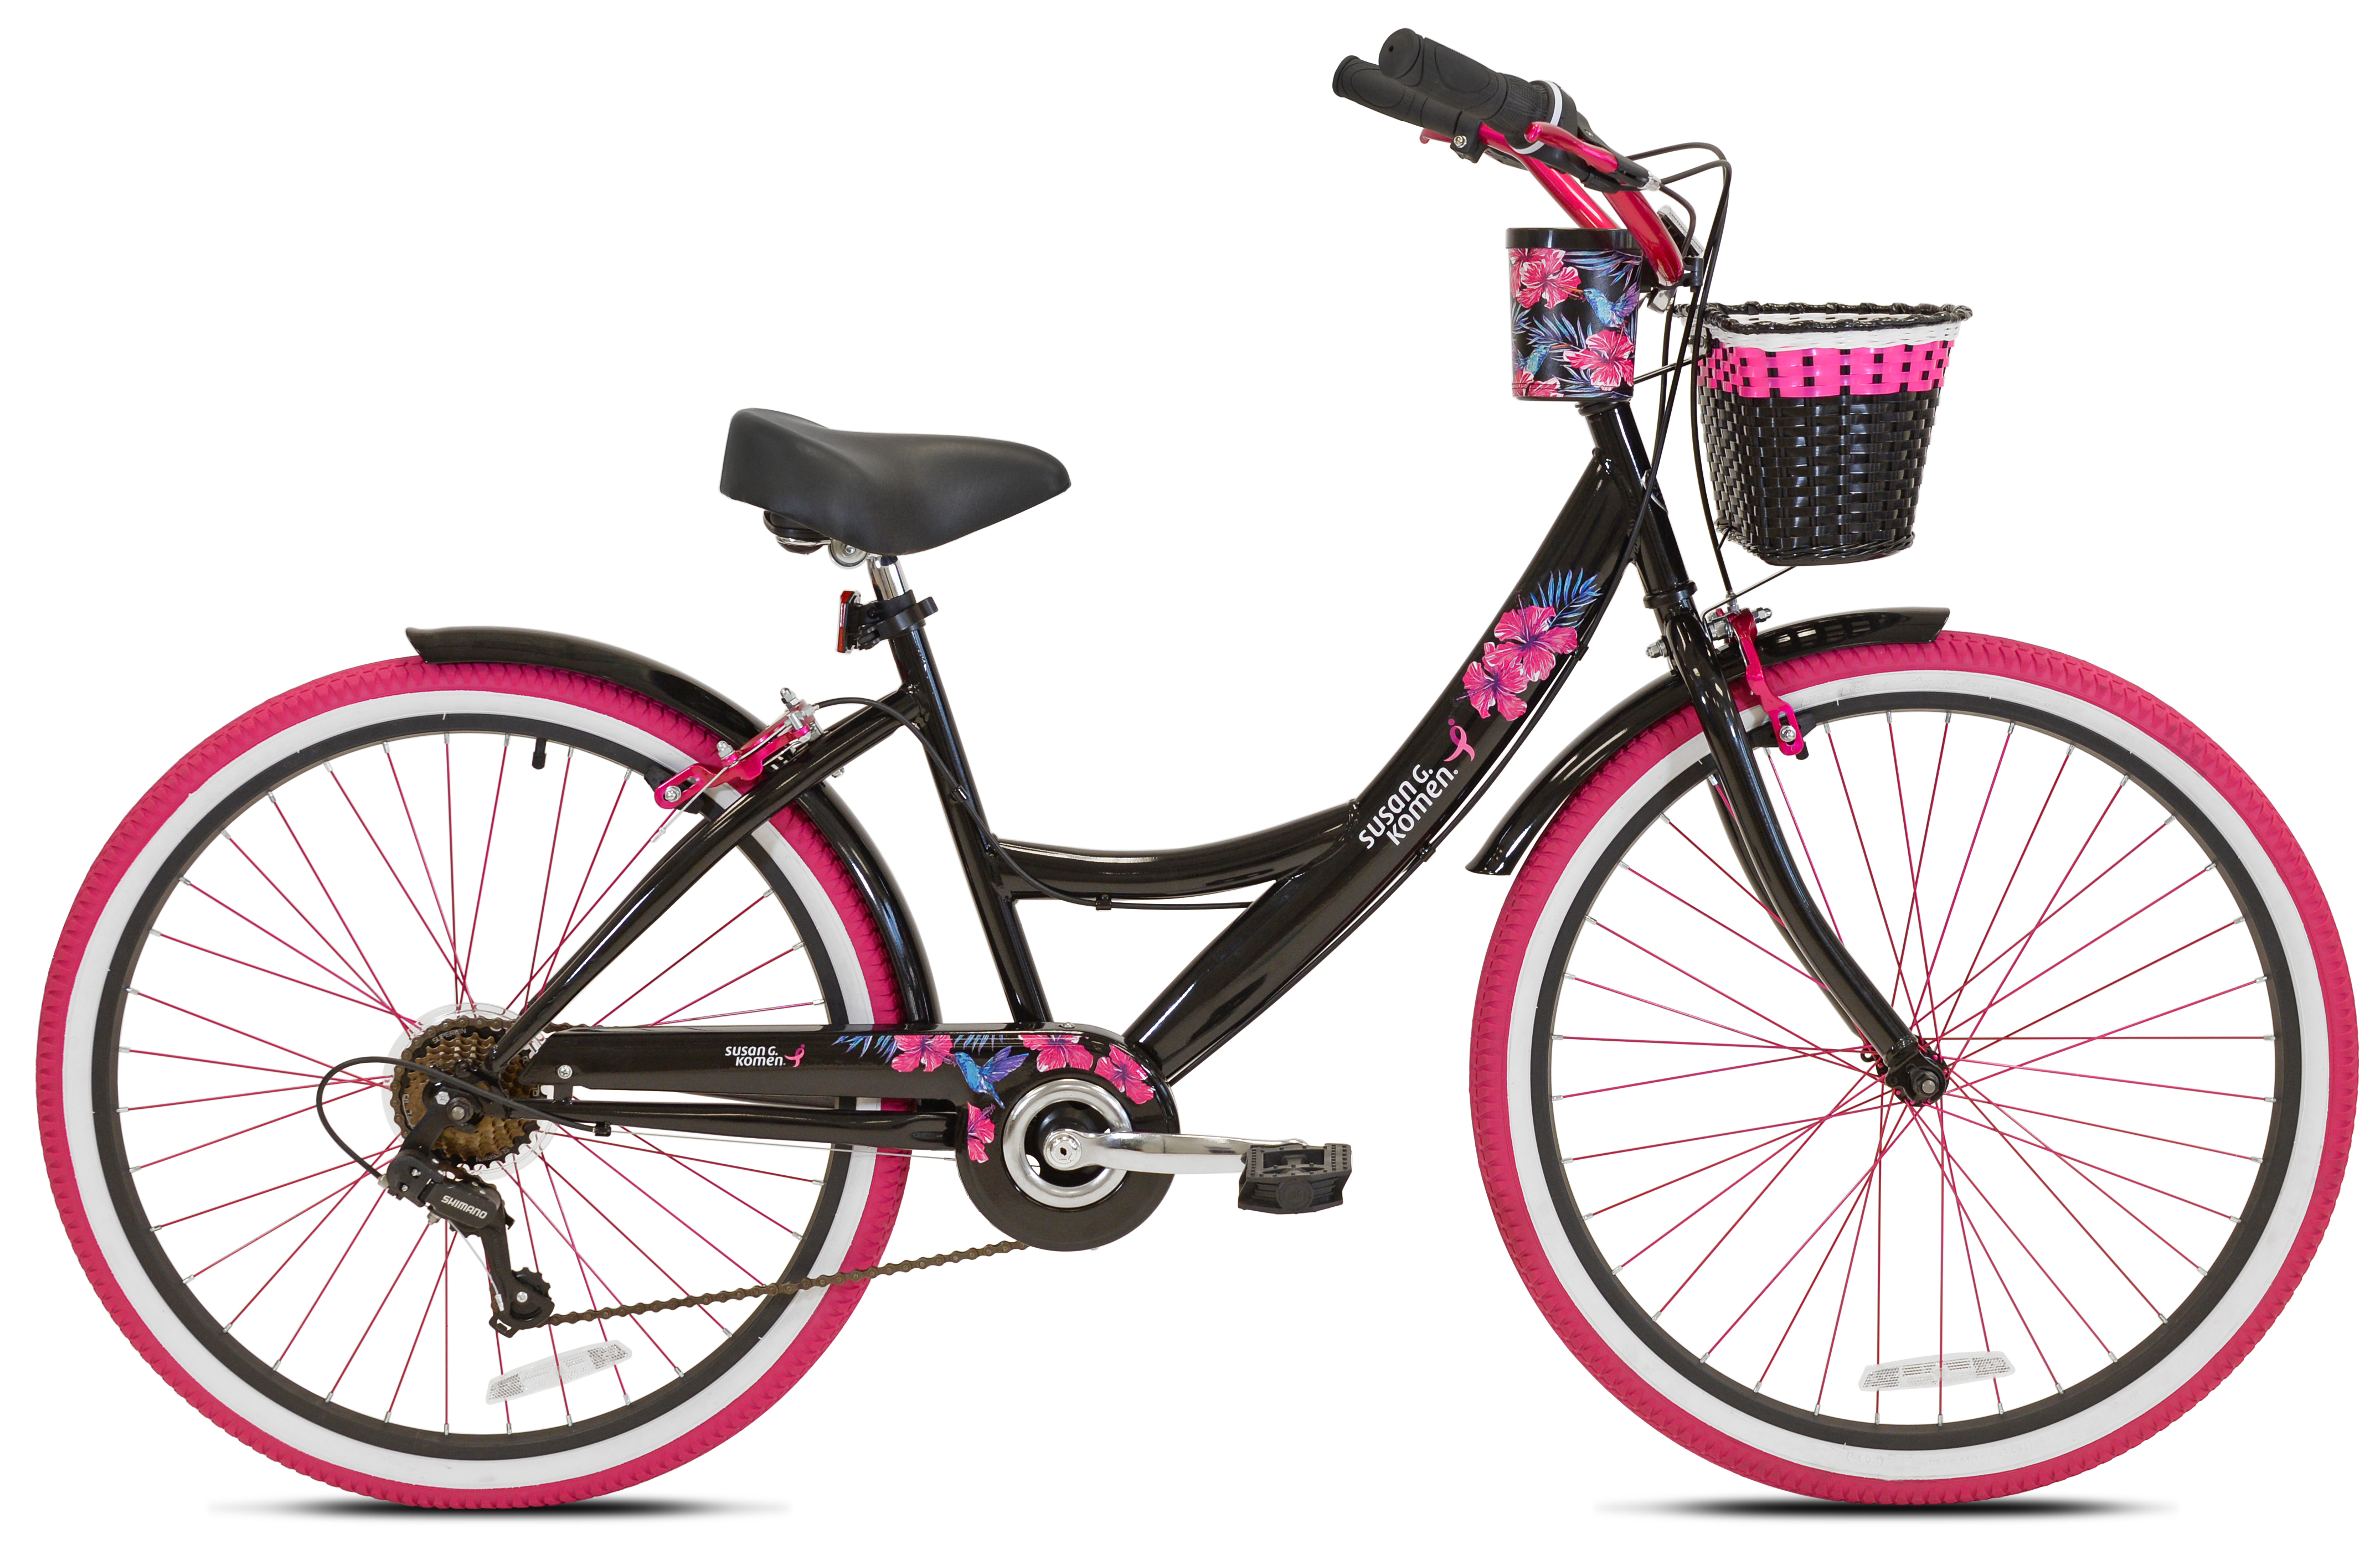 Susan G Komen 26" Women's Cruiser Bike, Black/Pink - image 2 of 10